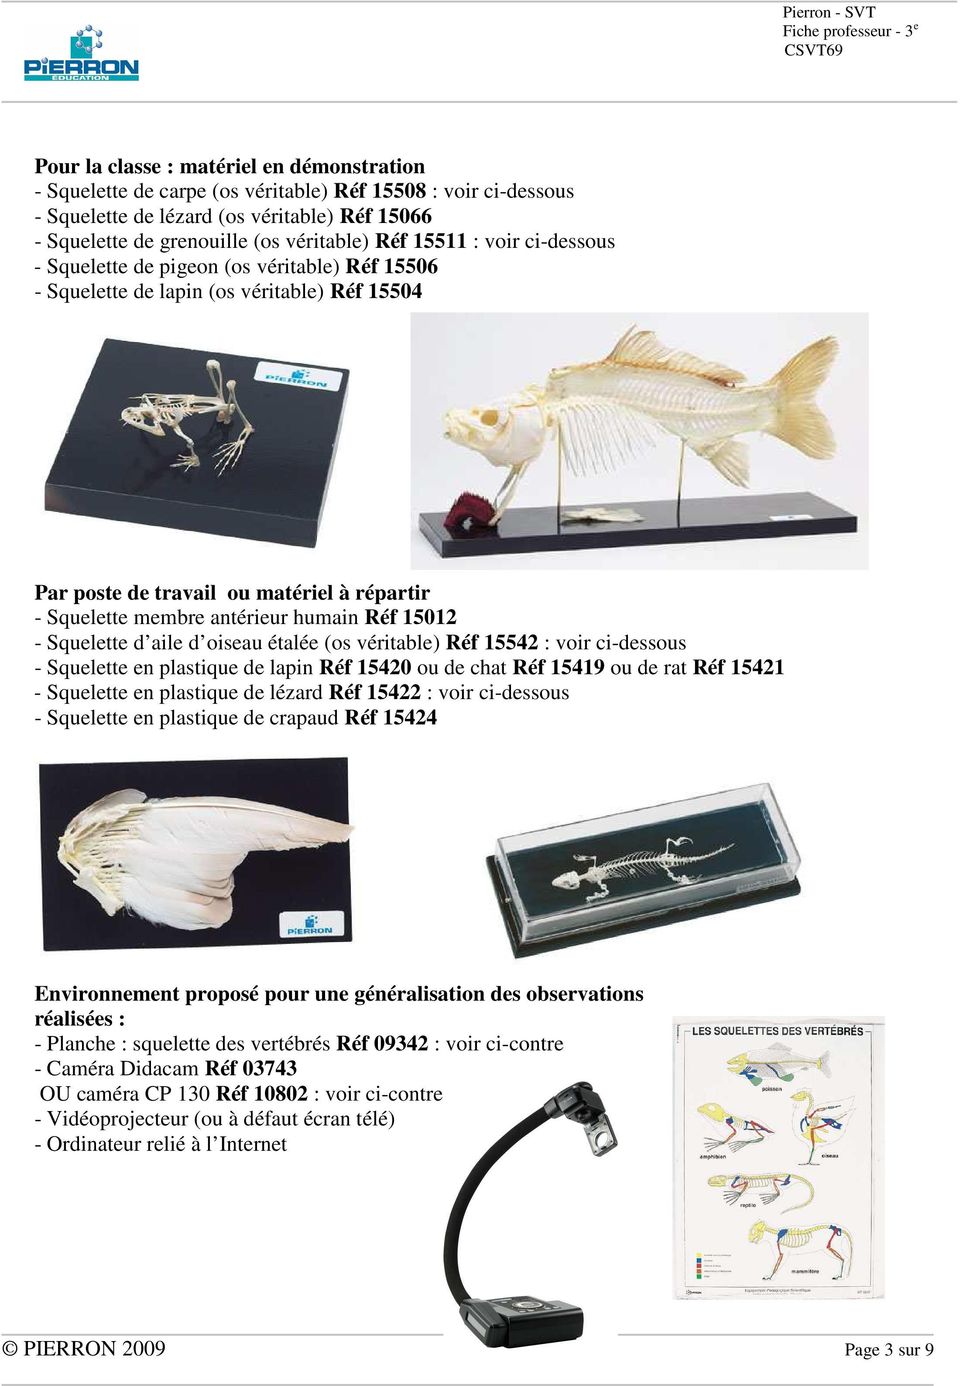 Réf 15012 - Squelette d aile d oiseau étalée (os véritable) Réf 15542 : voir ci-dessous - Squelette en plastique de lapin Réf 15420 ou de chat Réf 15419 ou de rat Réf 15421 - Squelette en plastique